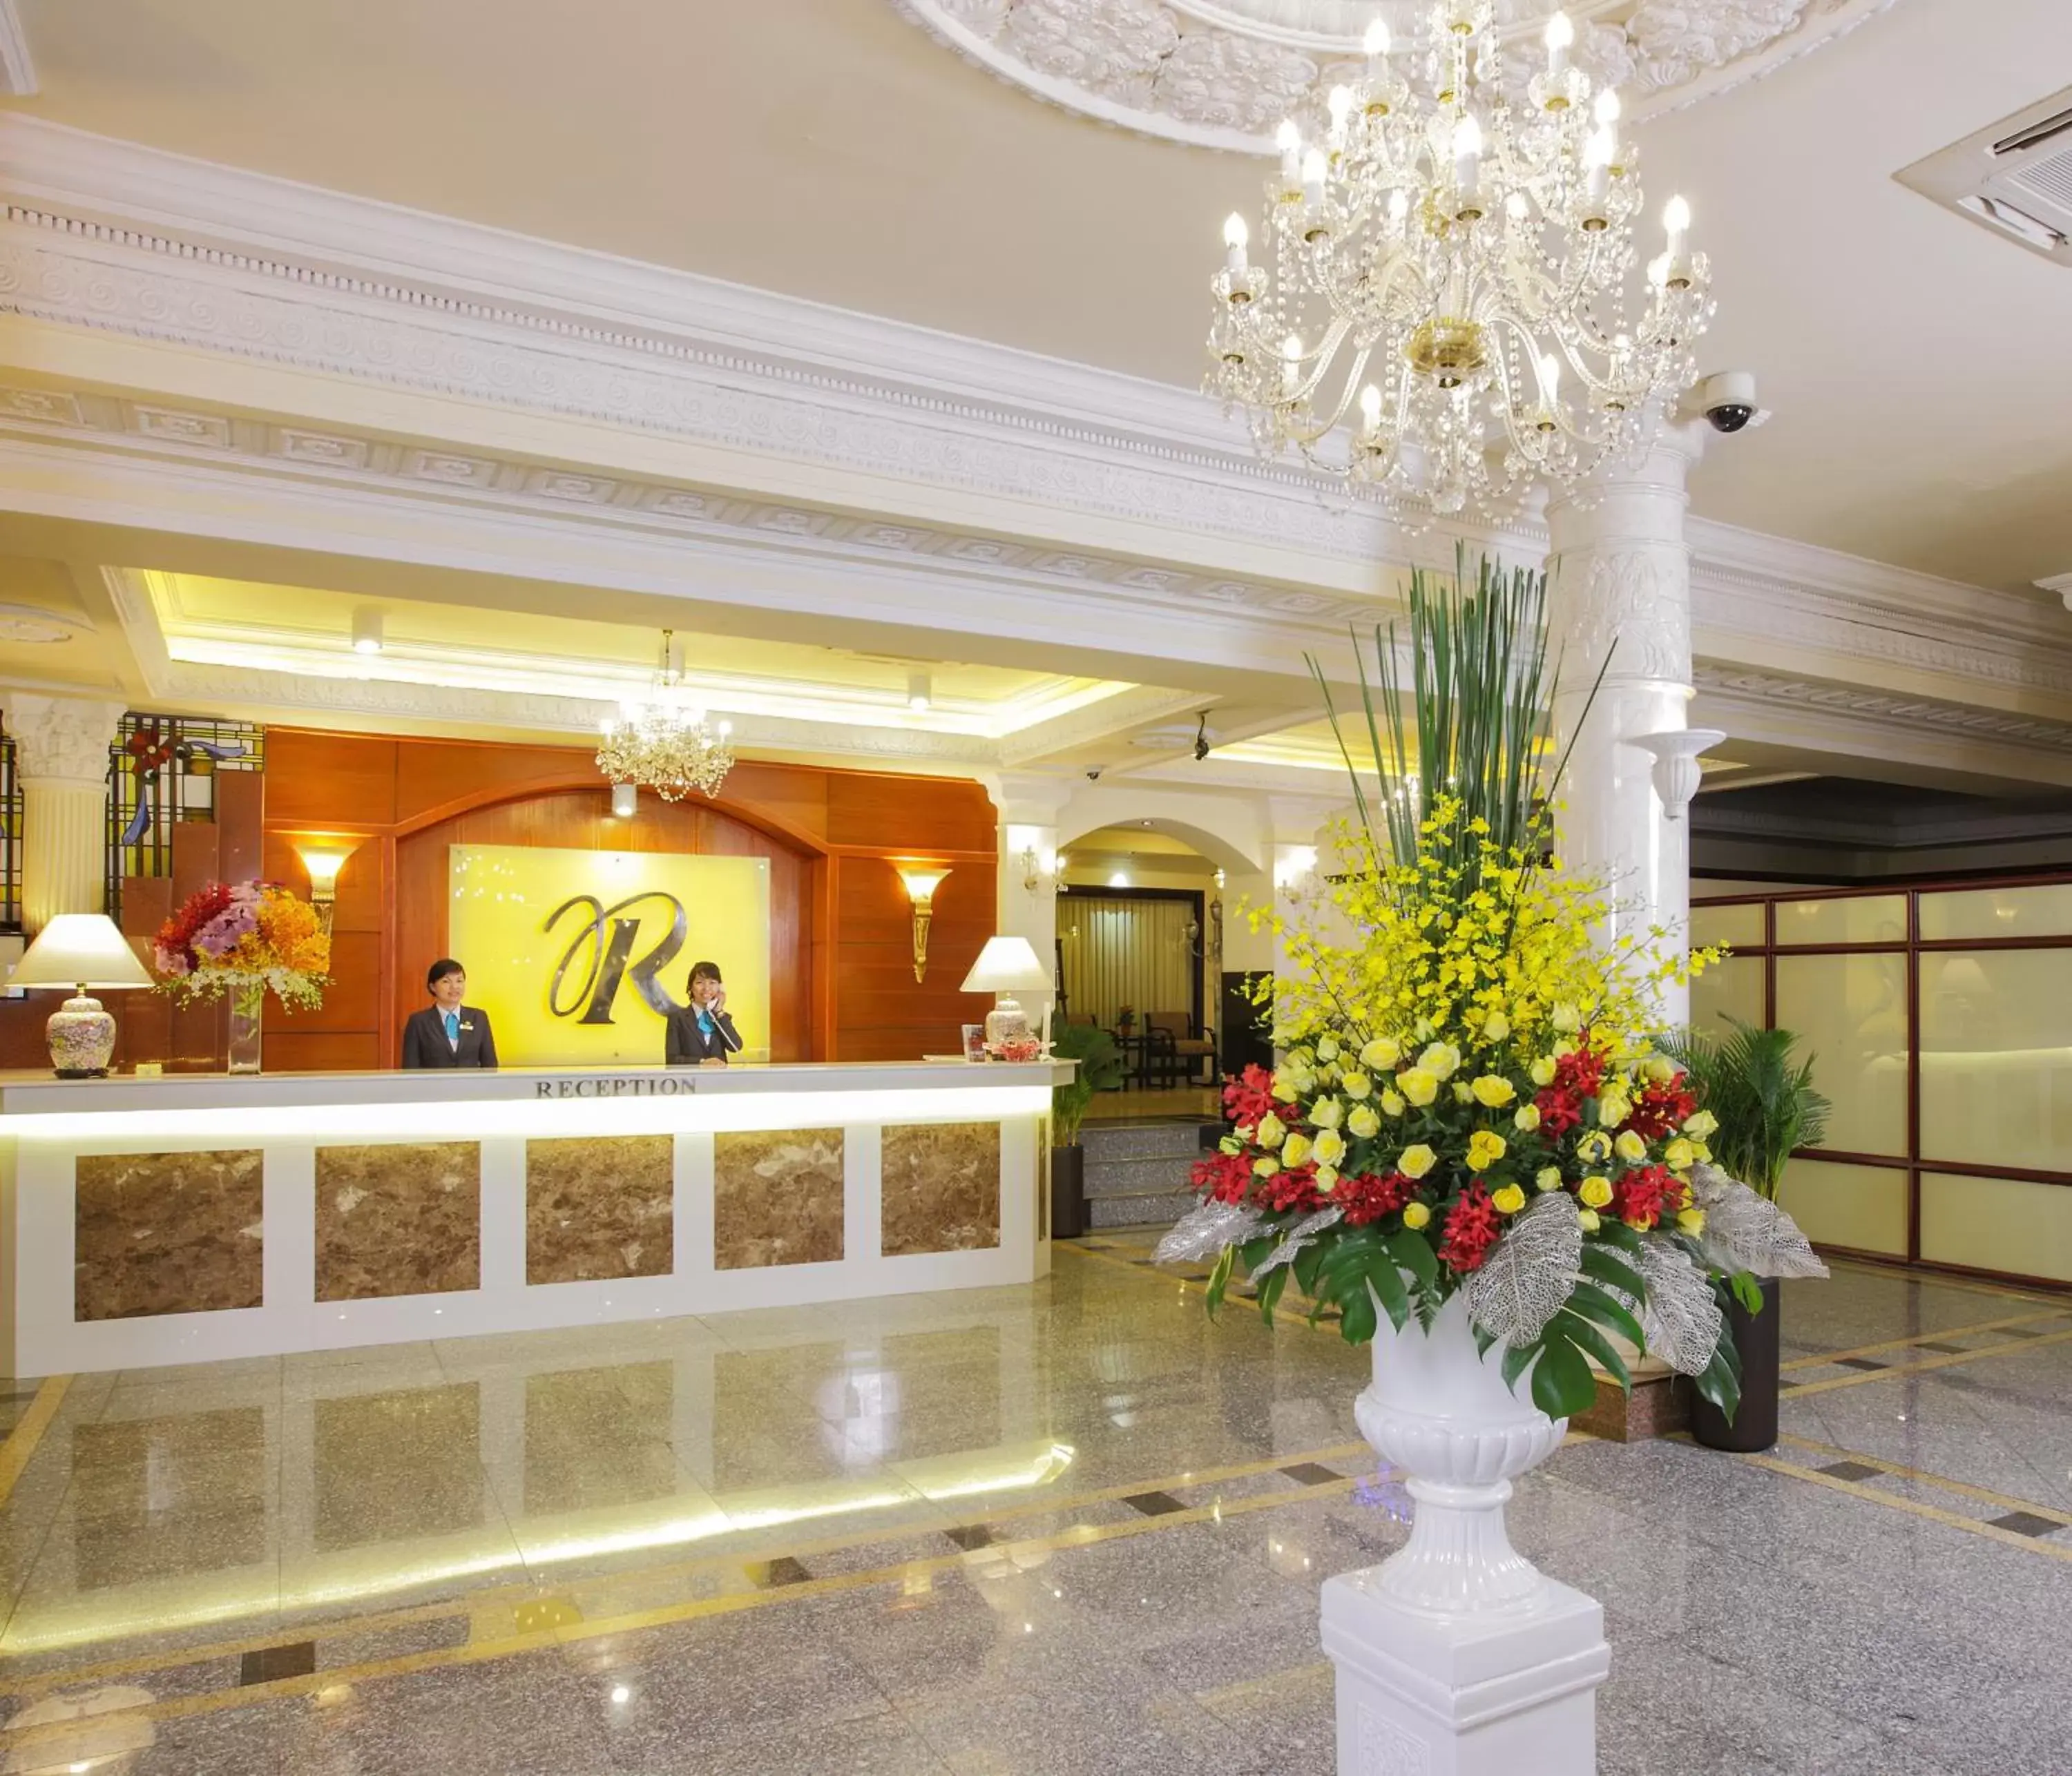 Lobby or reception, Lobby/Reception in Royal Hotel Saigon